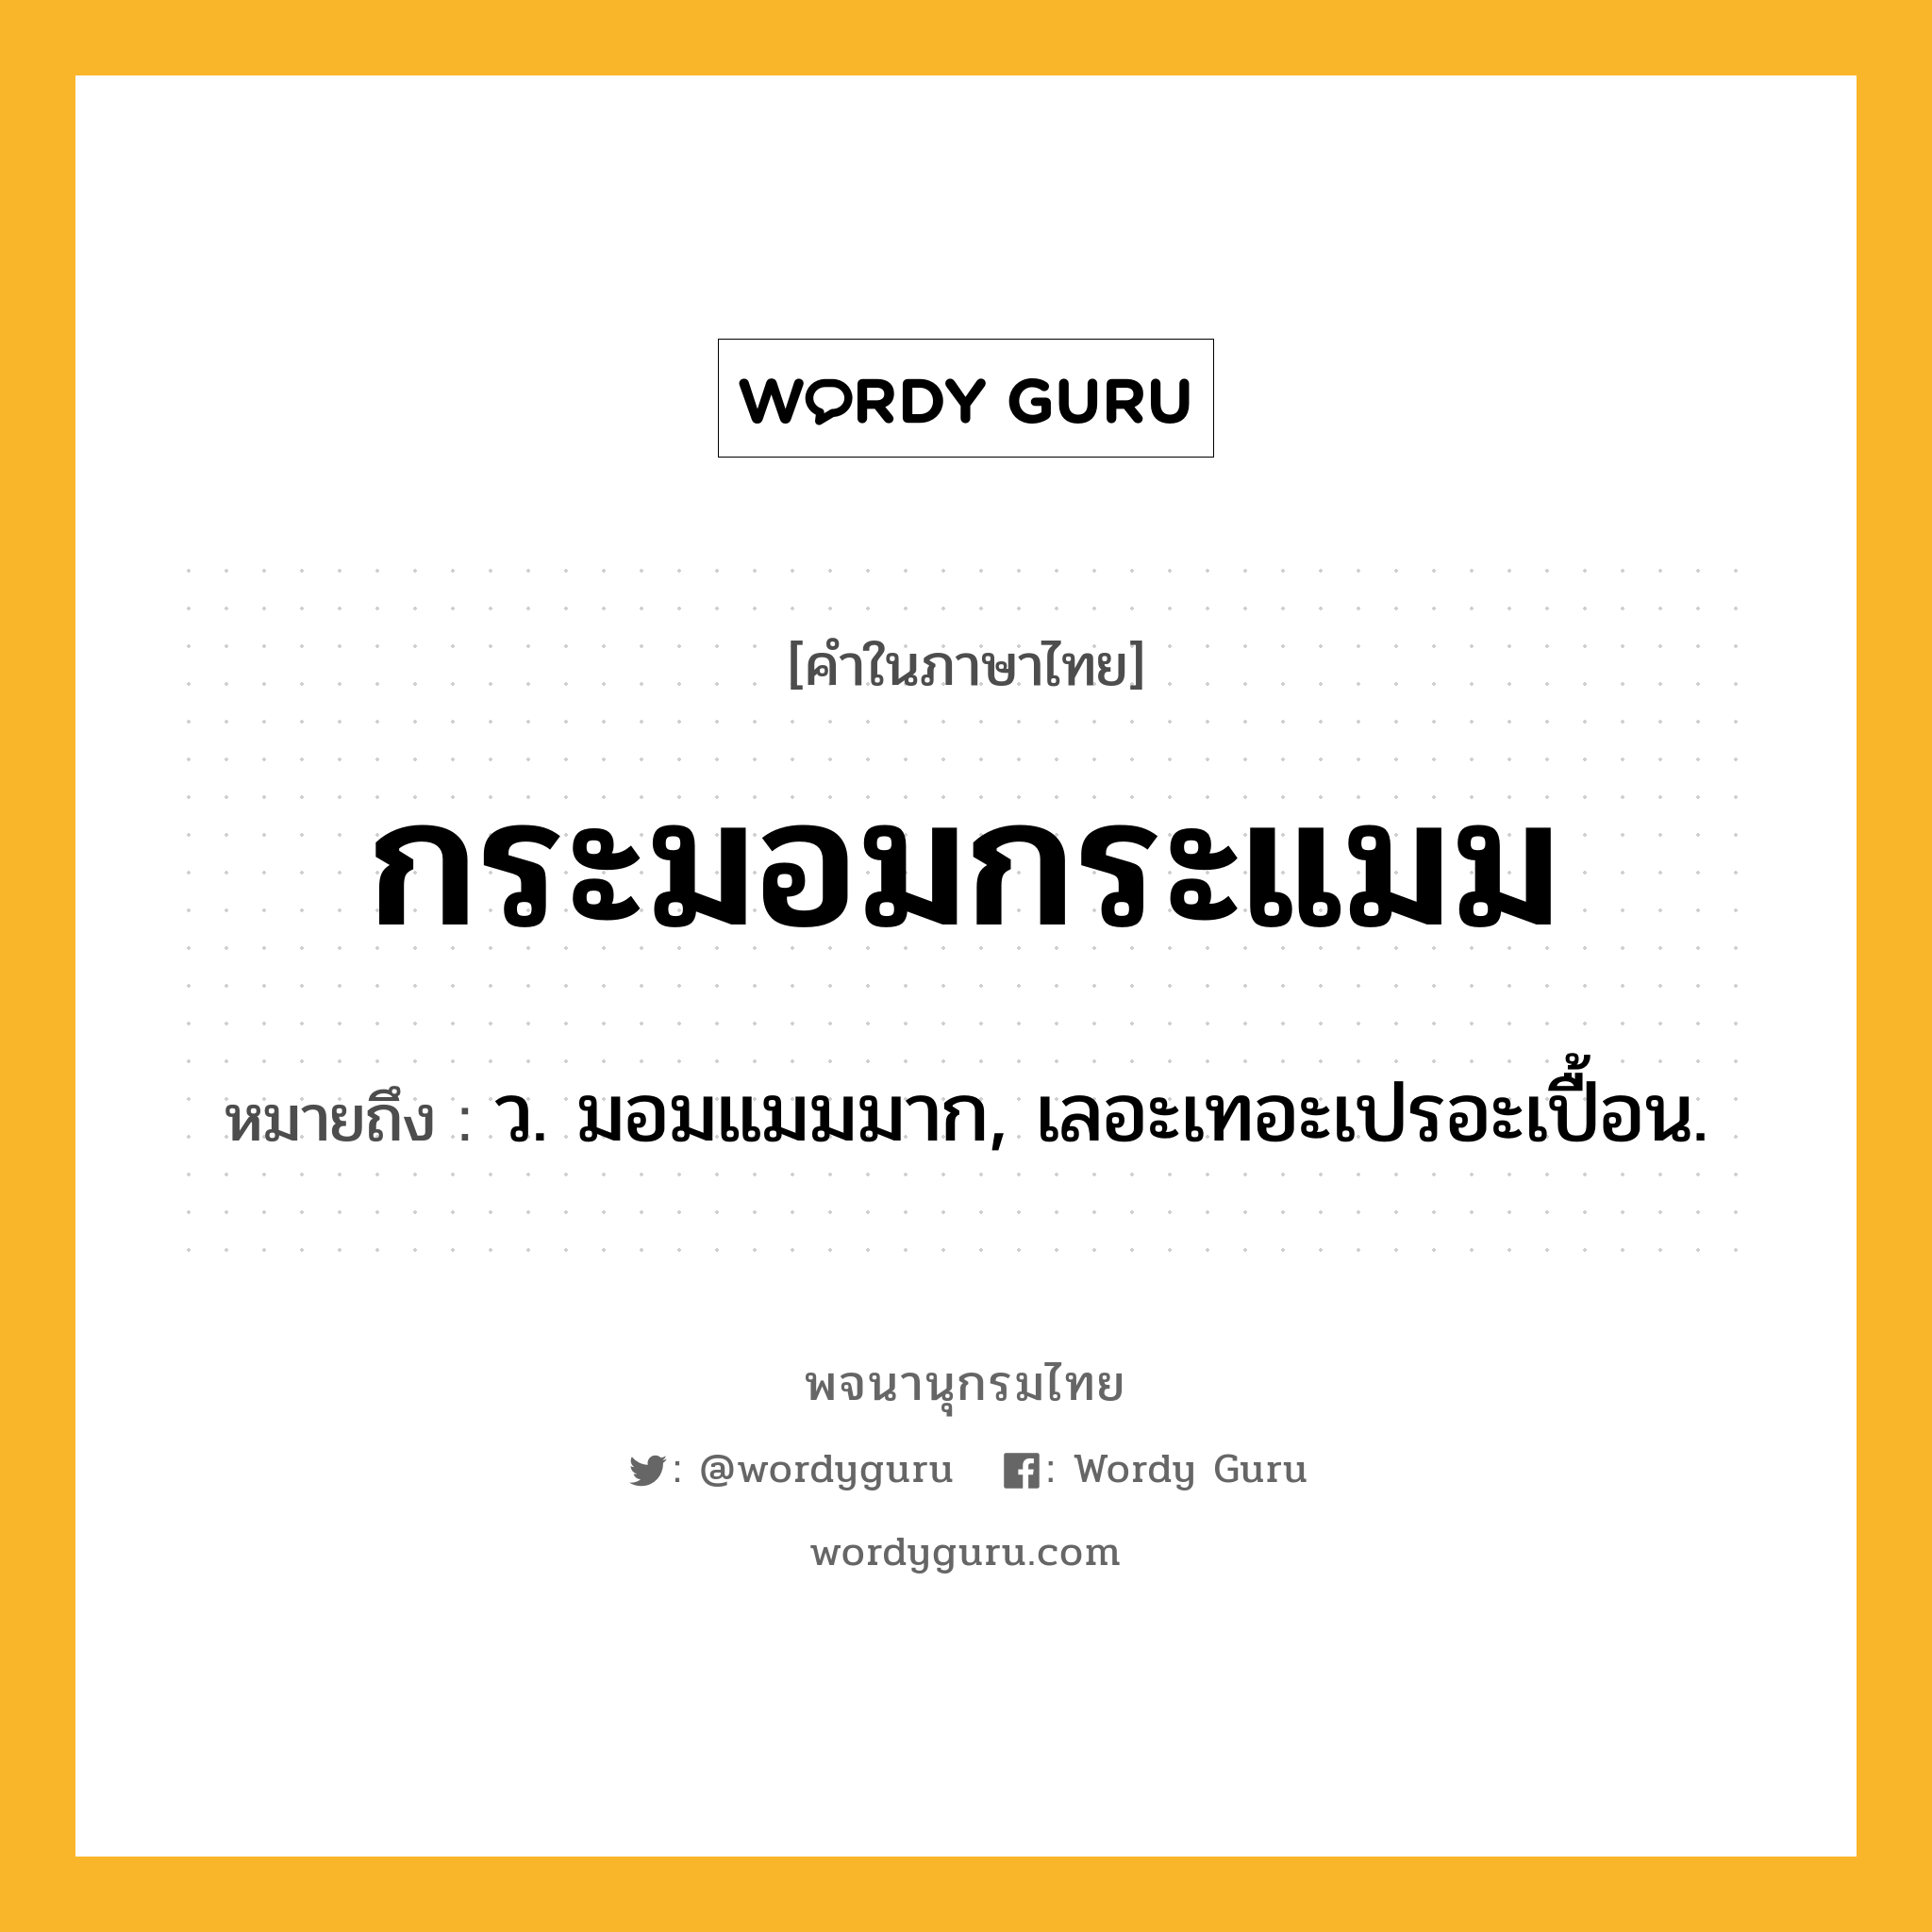 กระมอมกระแมม หมายถึงอะไร?, คำในภาษาไทย กระมอมกระแมม หมายถึง ว. มอมแมมมาก, เลอะเทอะเปรอะเปื้อน.